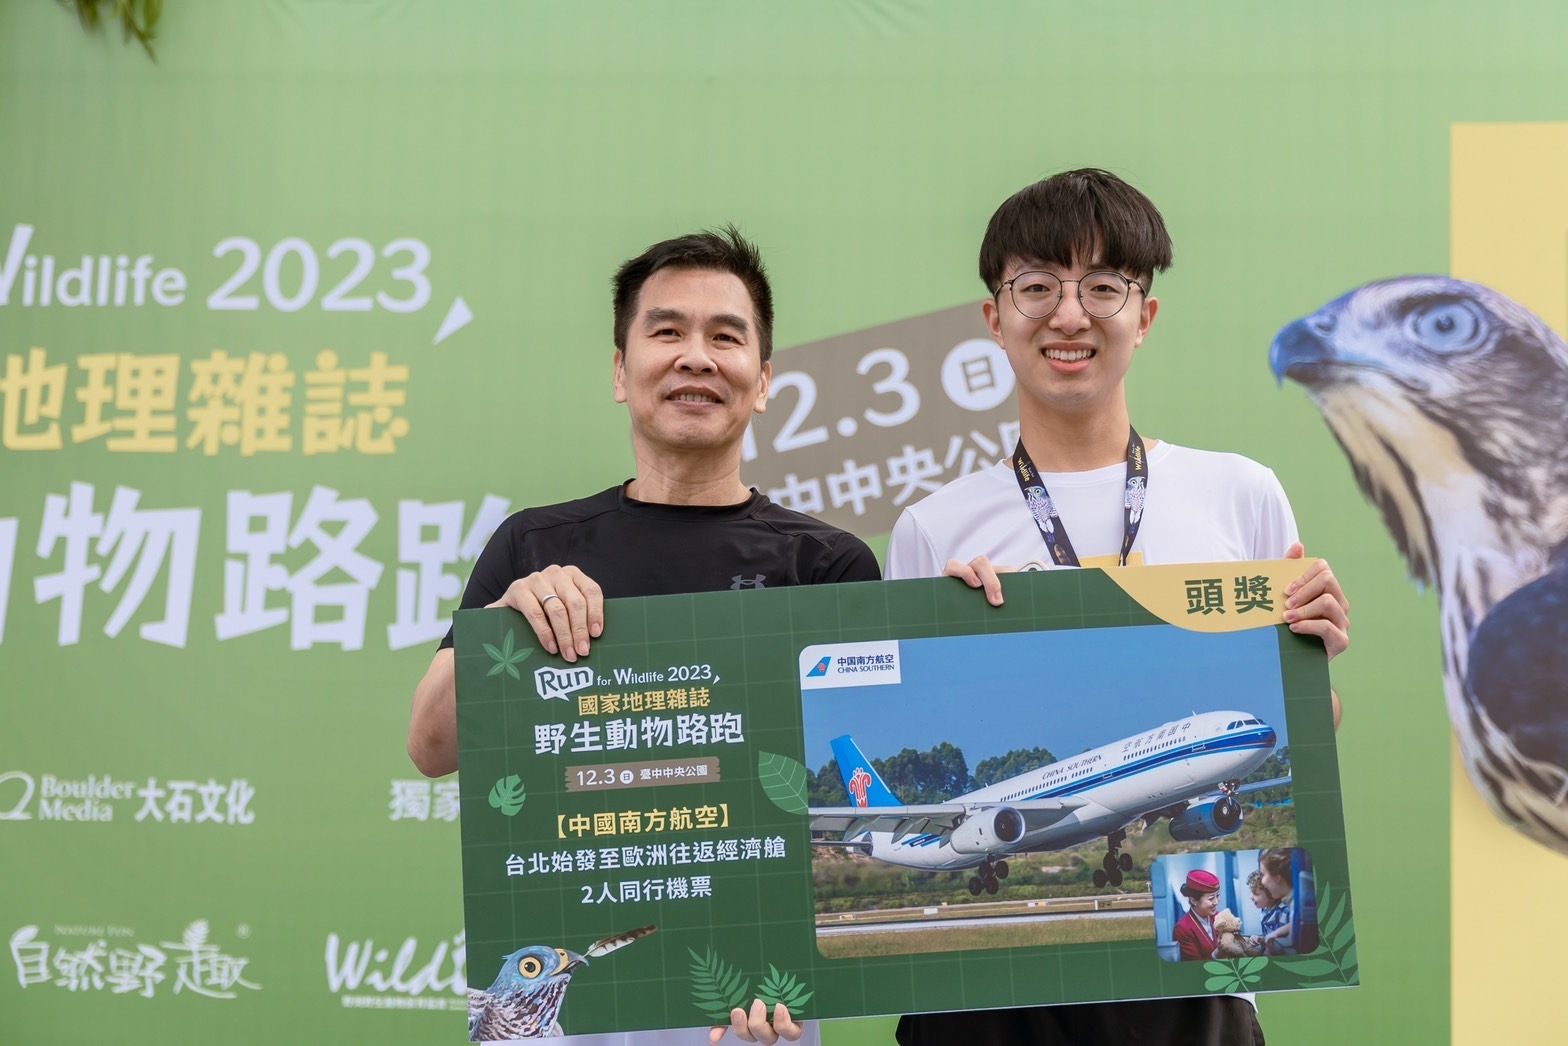   中國南方航空台北往返歐洲經濟艙雙人來回機票得獎者與國聚建設施純弘總經理